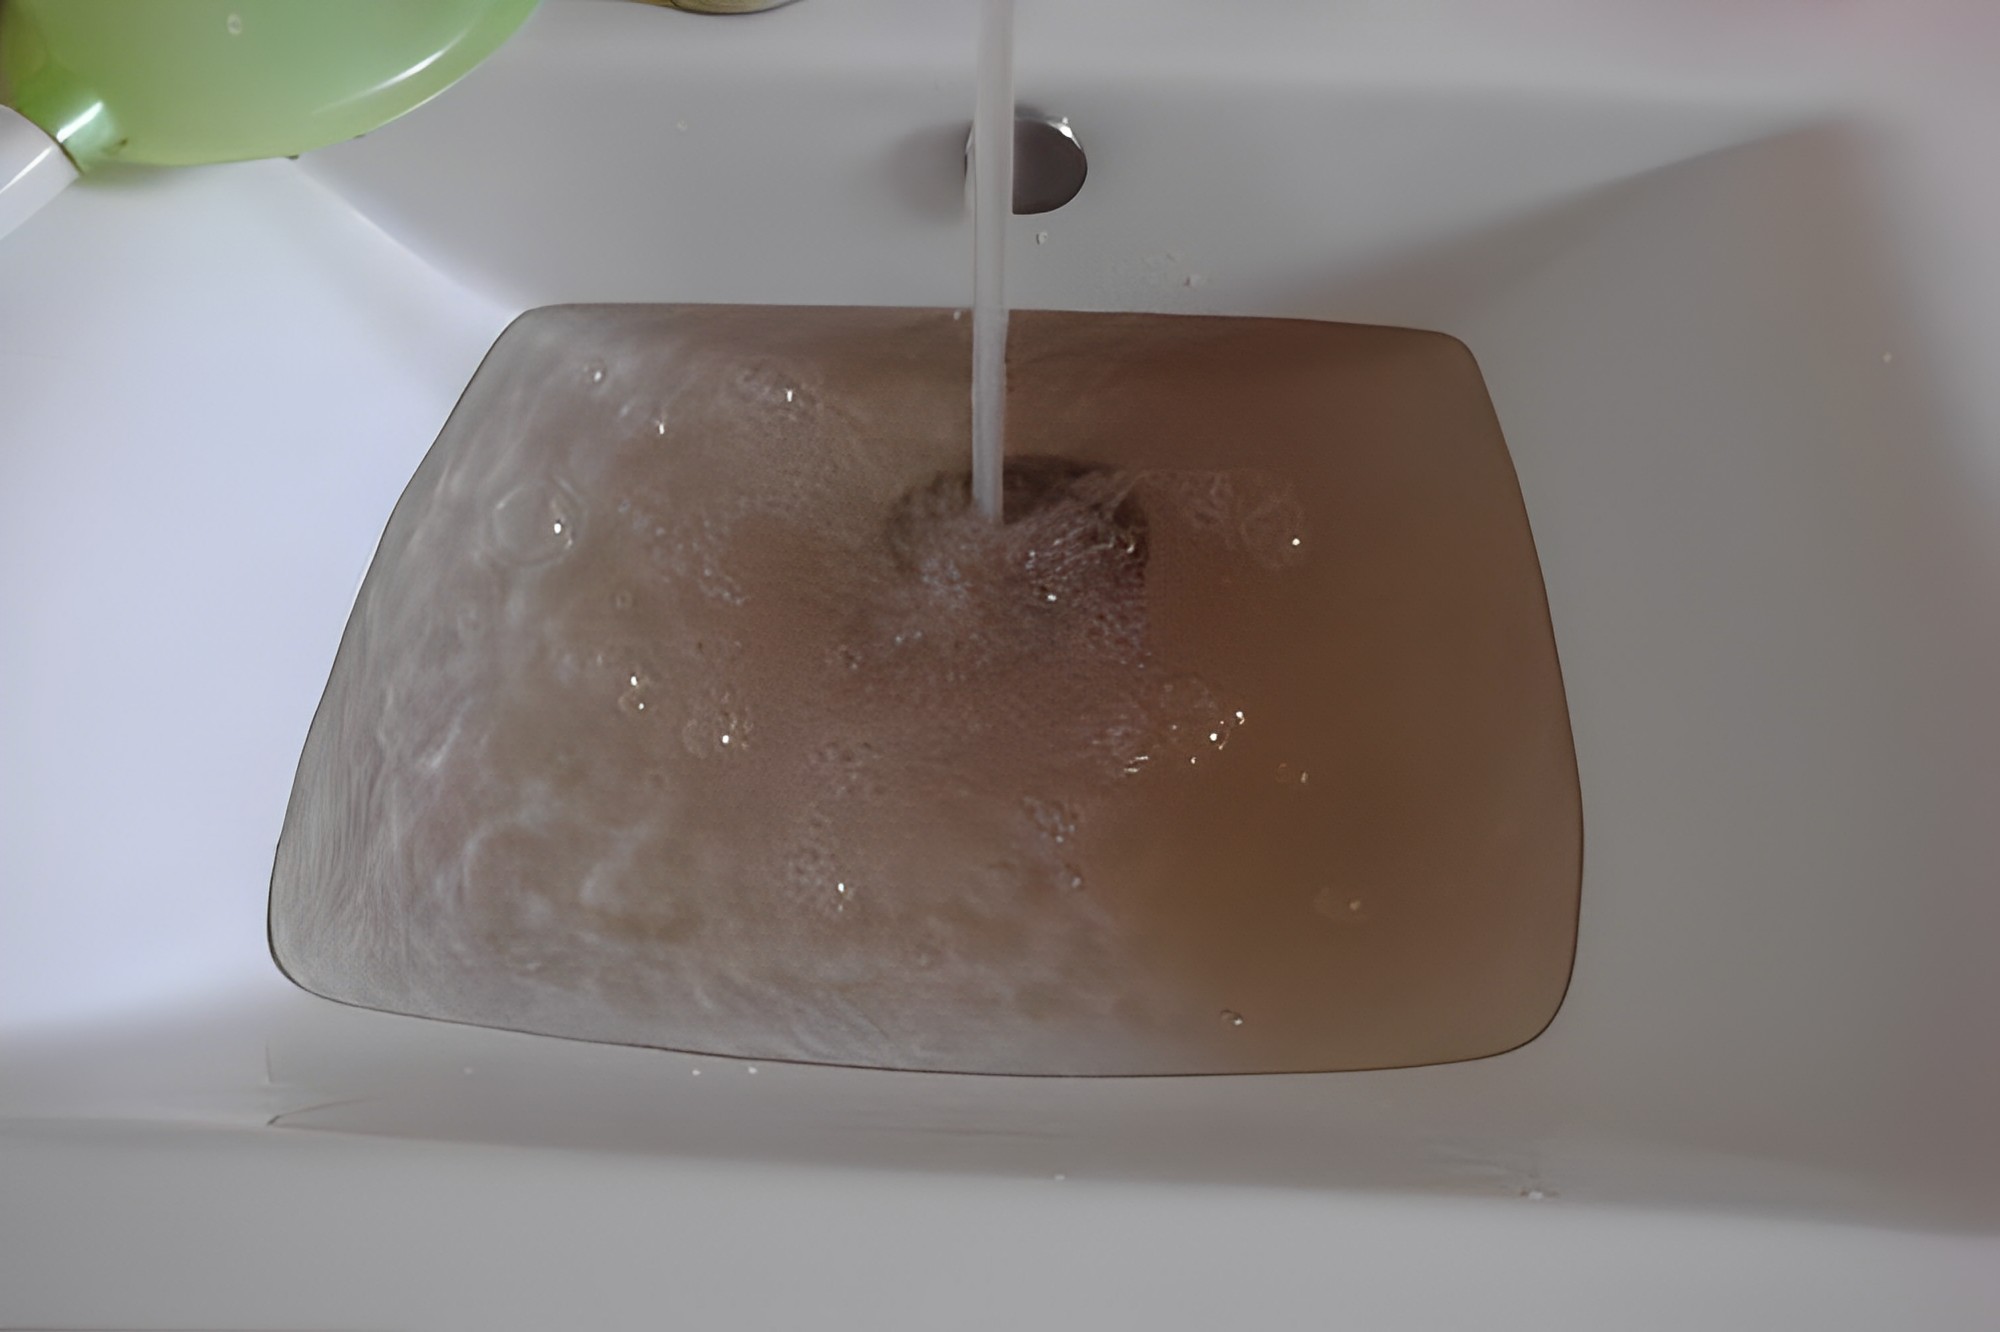 Nhận biết nước máy bị ô nhiễm nhớ 6 dấu hiệu này, nắm được thì nước nhà bạn luôn sạch, an toàn sức khỏe - 7